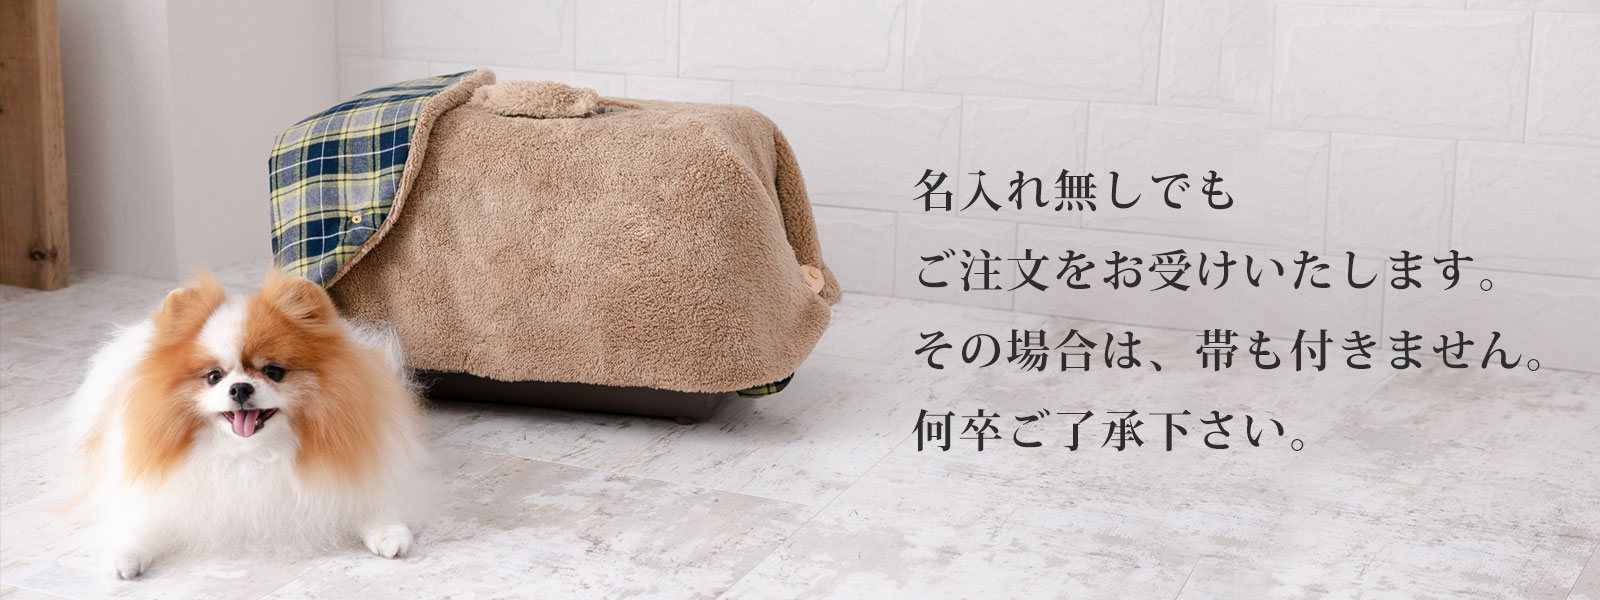 日本製 キャリー用カバー キャリーケース 犬 猫 防寒 冬 サイズ キャメル チェック